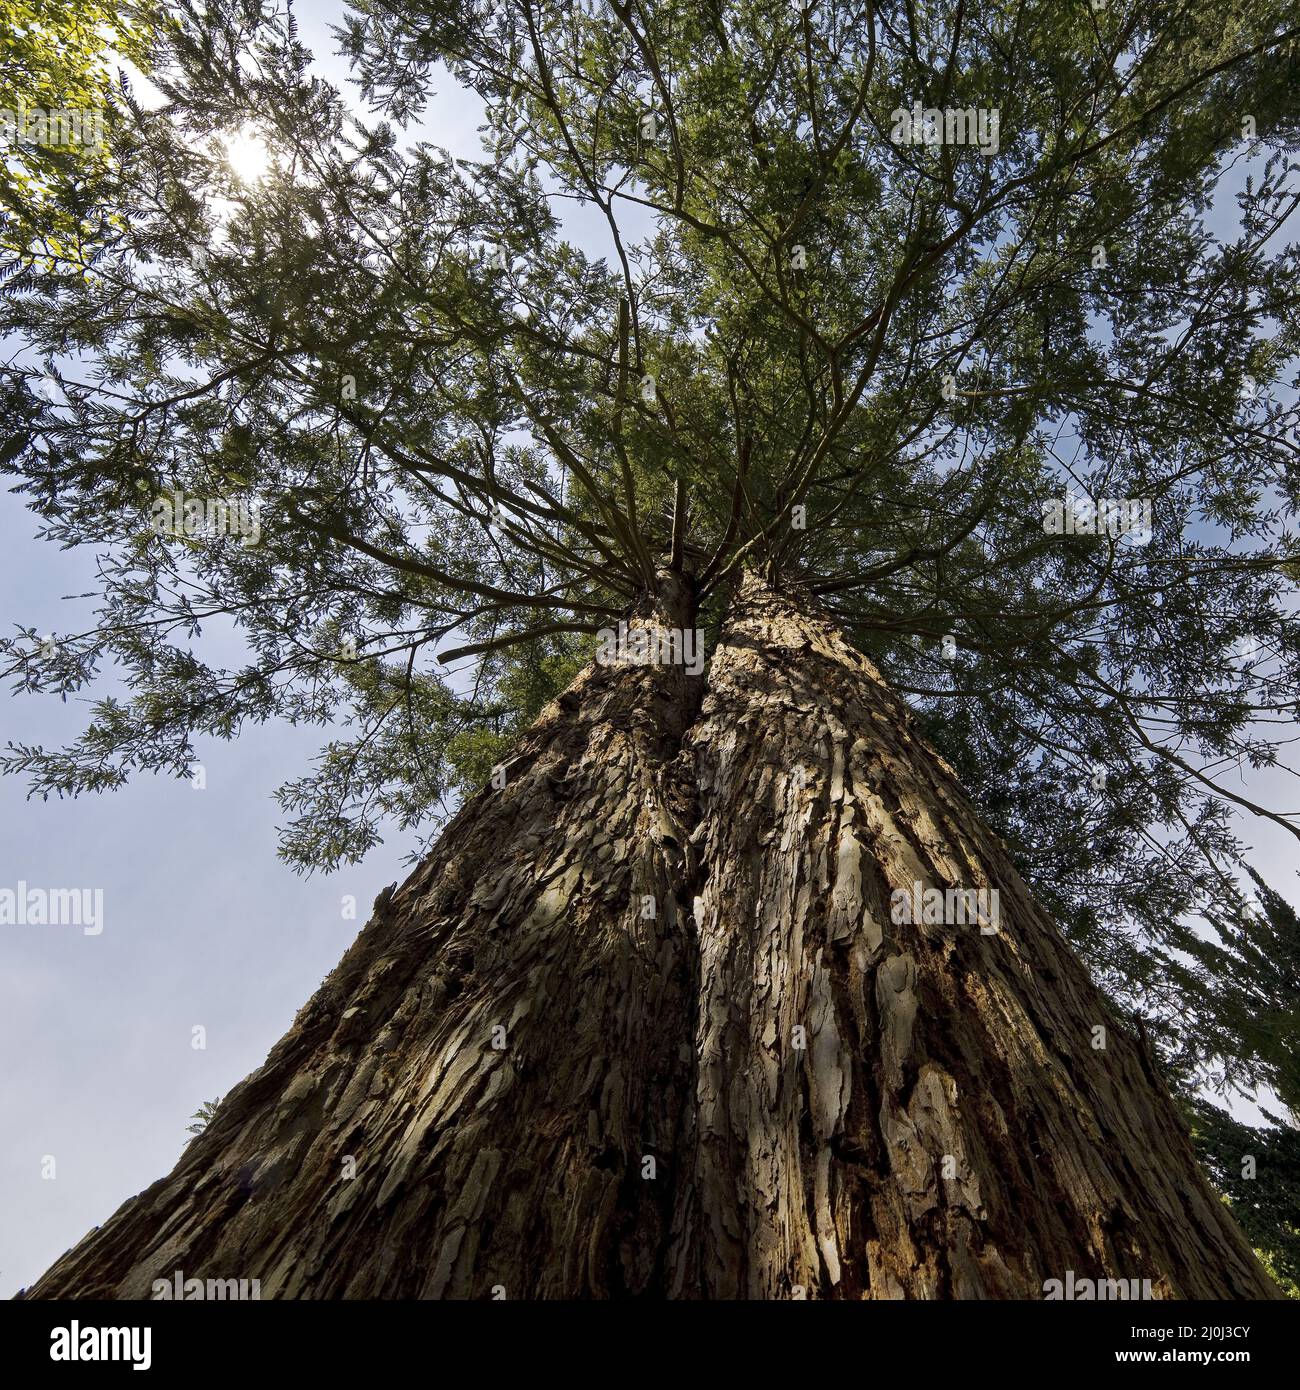 Giant sequoia trees (Sequoiadendron giganteum), Sequoiafarm Kaldenkirchen, Nettetal, Germany, Europe Stock Photo